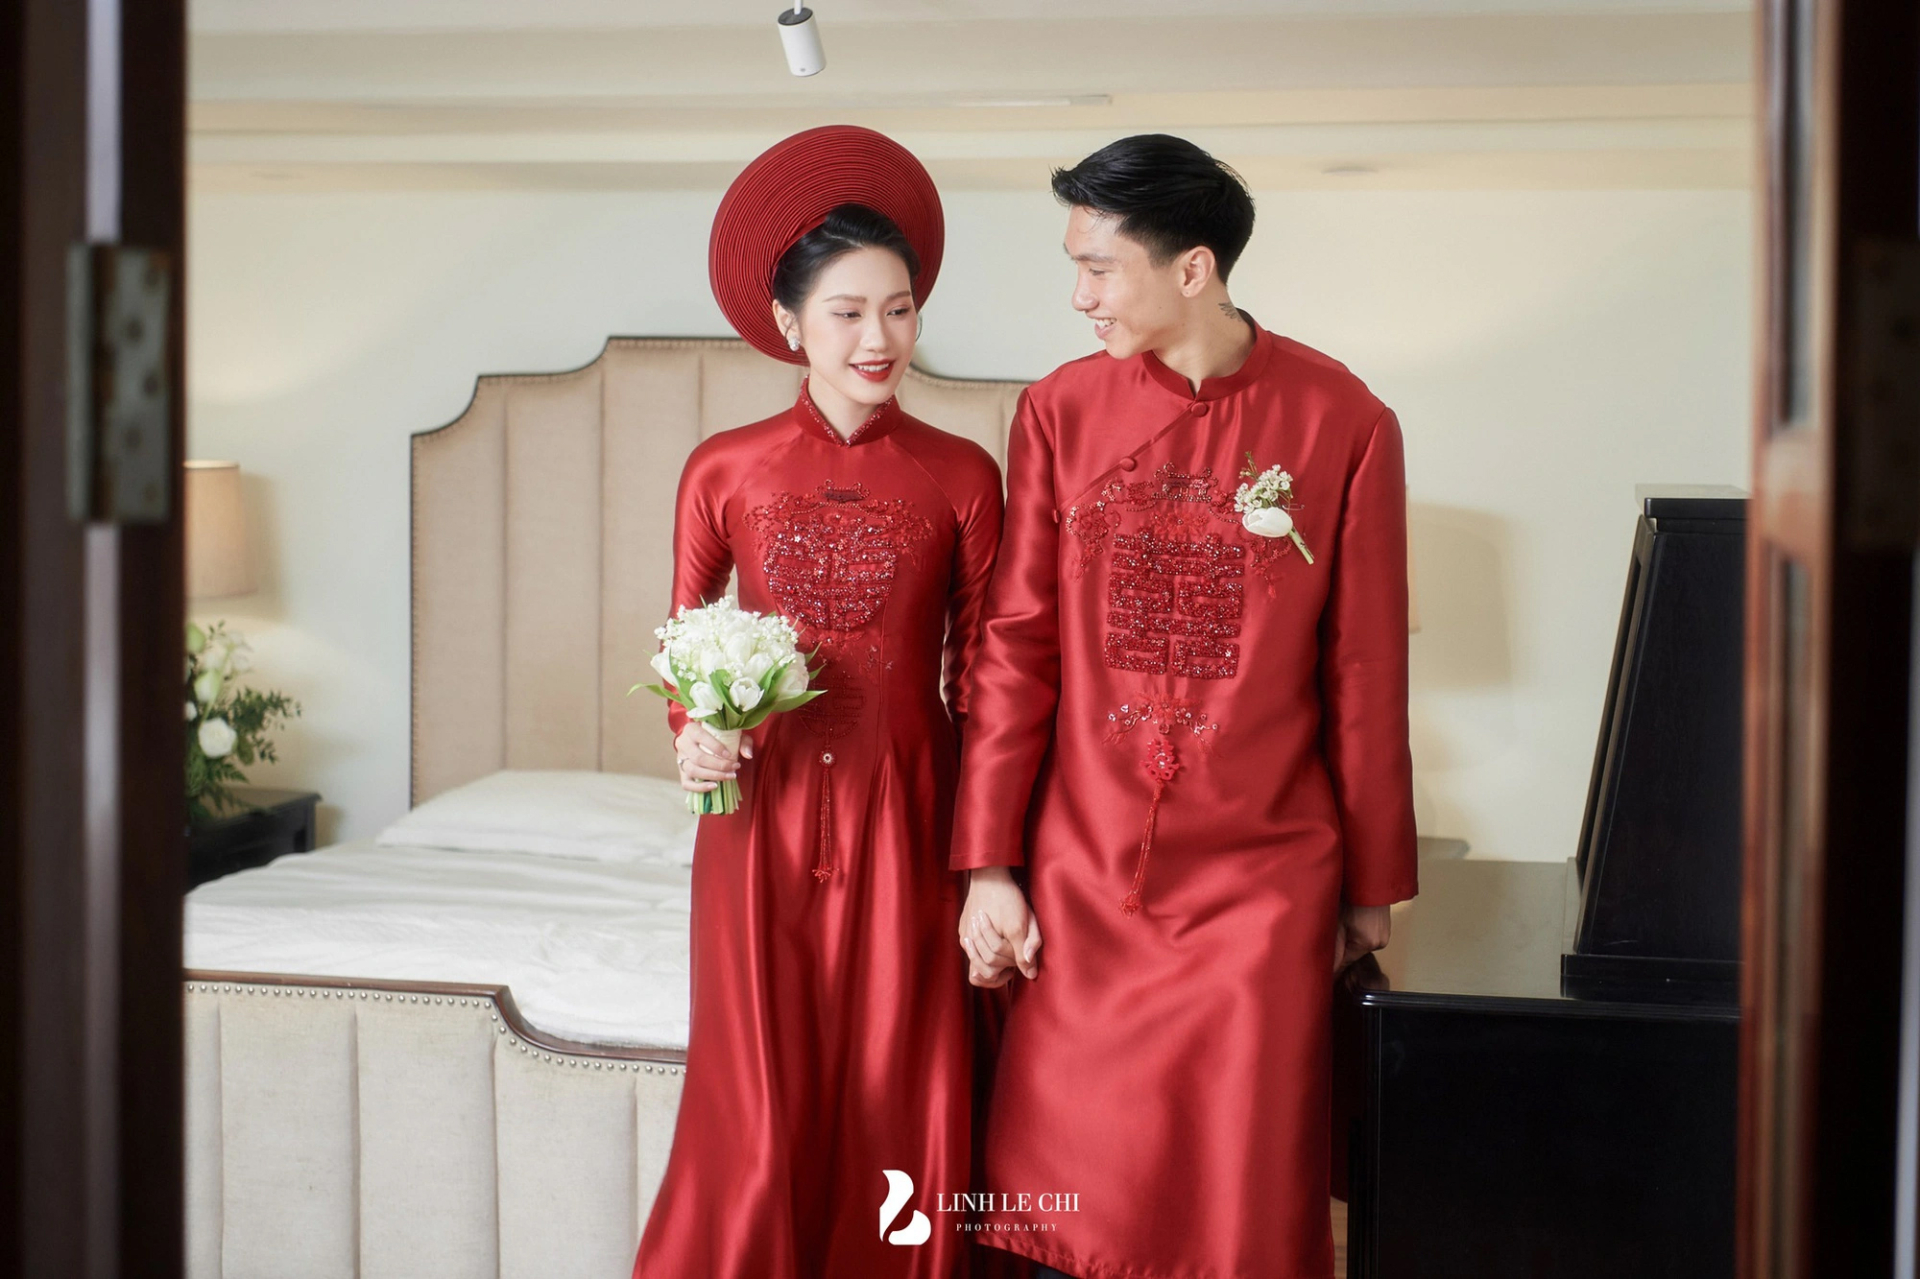 Nhiếp ảnh gia chụp cho đám cưới của Quang Hải cũng từng bấm máy cho hôn lễ của Đoàn Văn Hậu